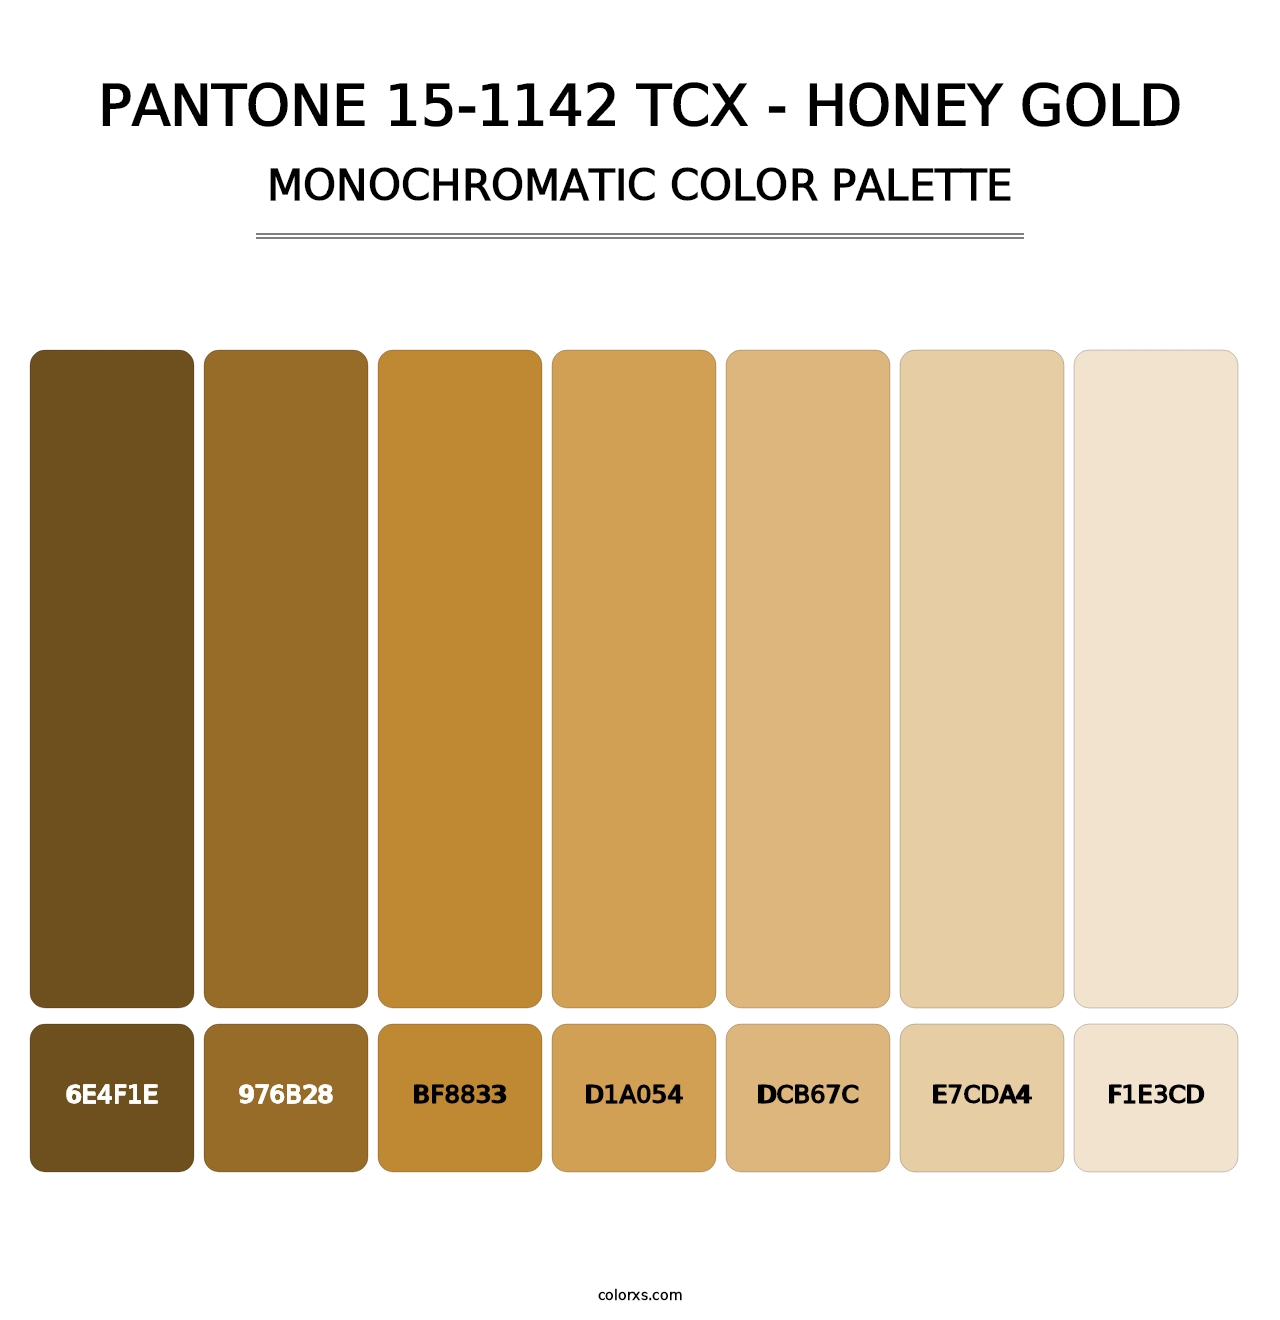 PANTONE 15-1142 TCX - Honey Gold - Monochromatic Color Palette